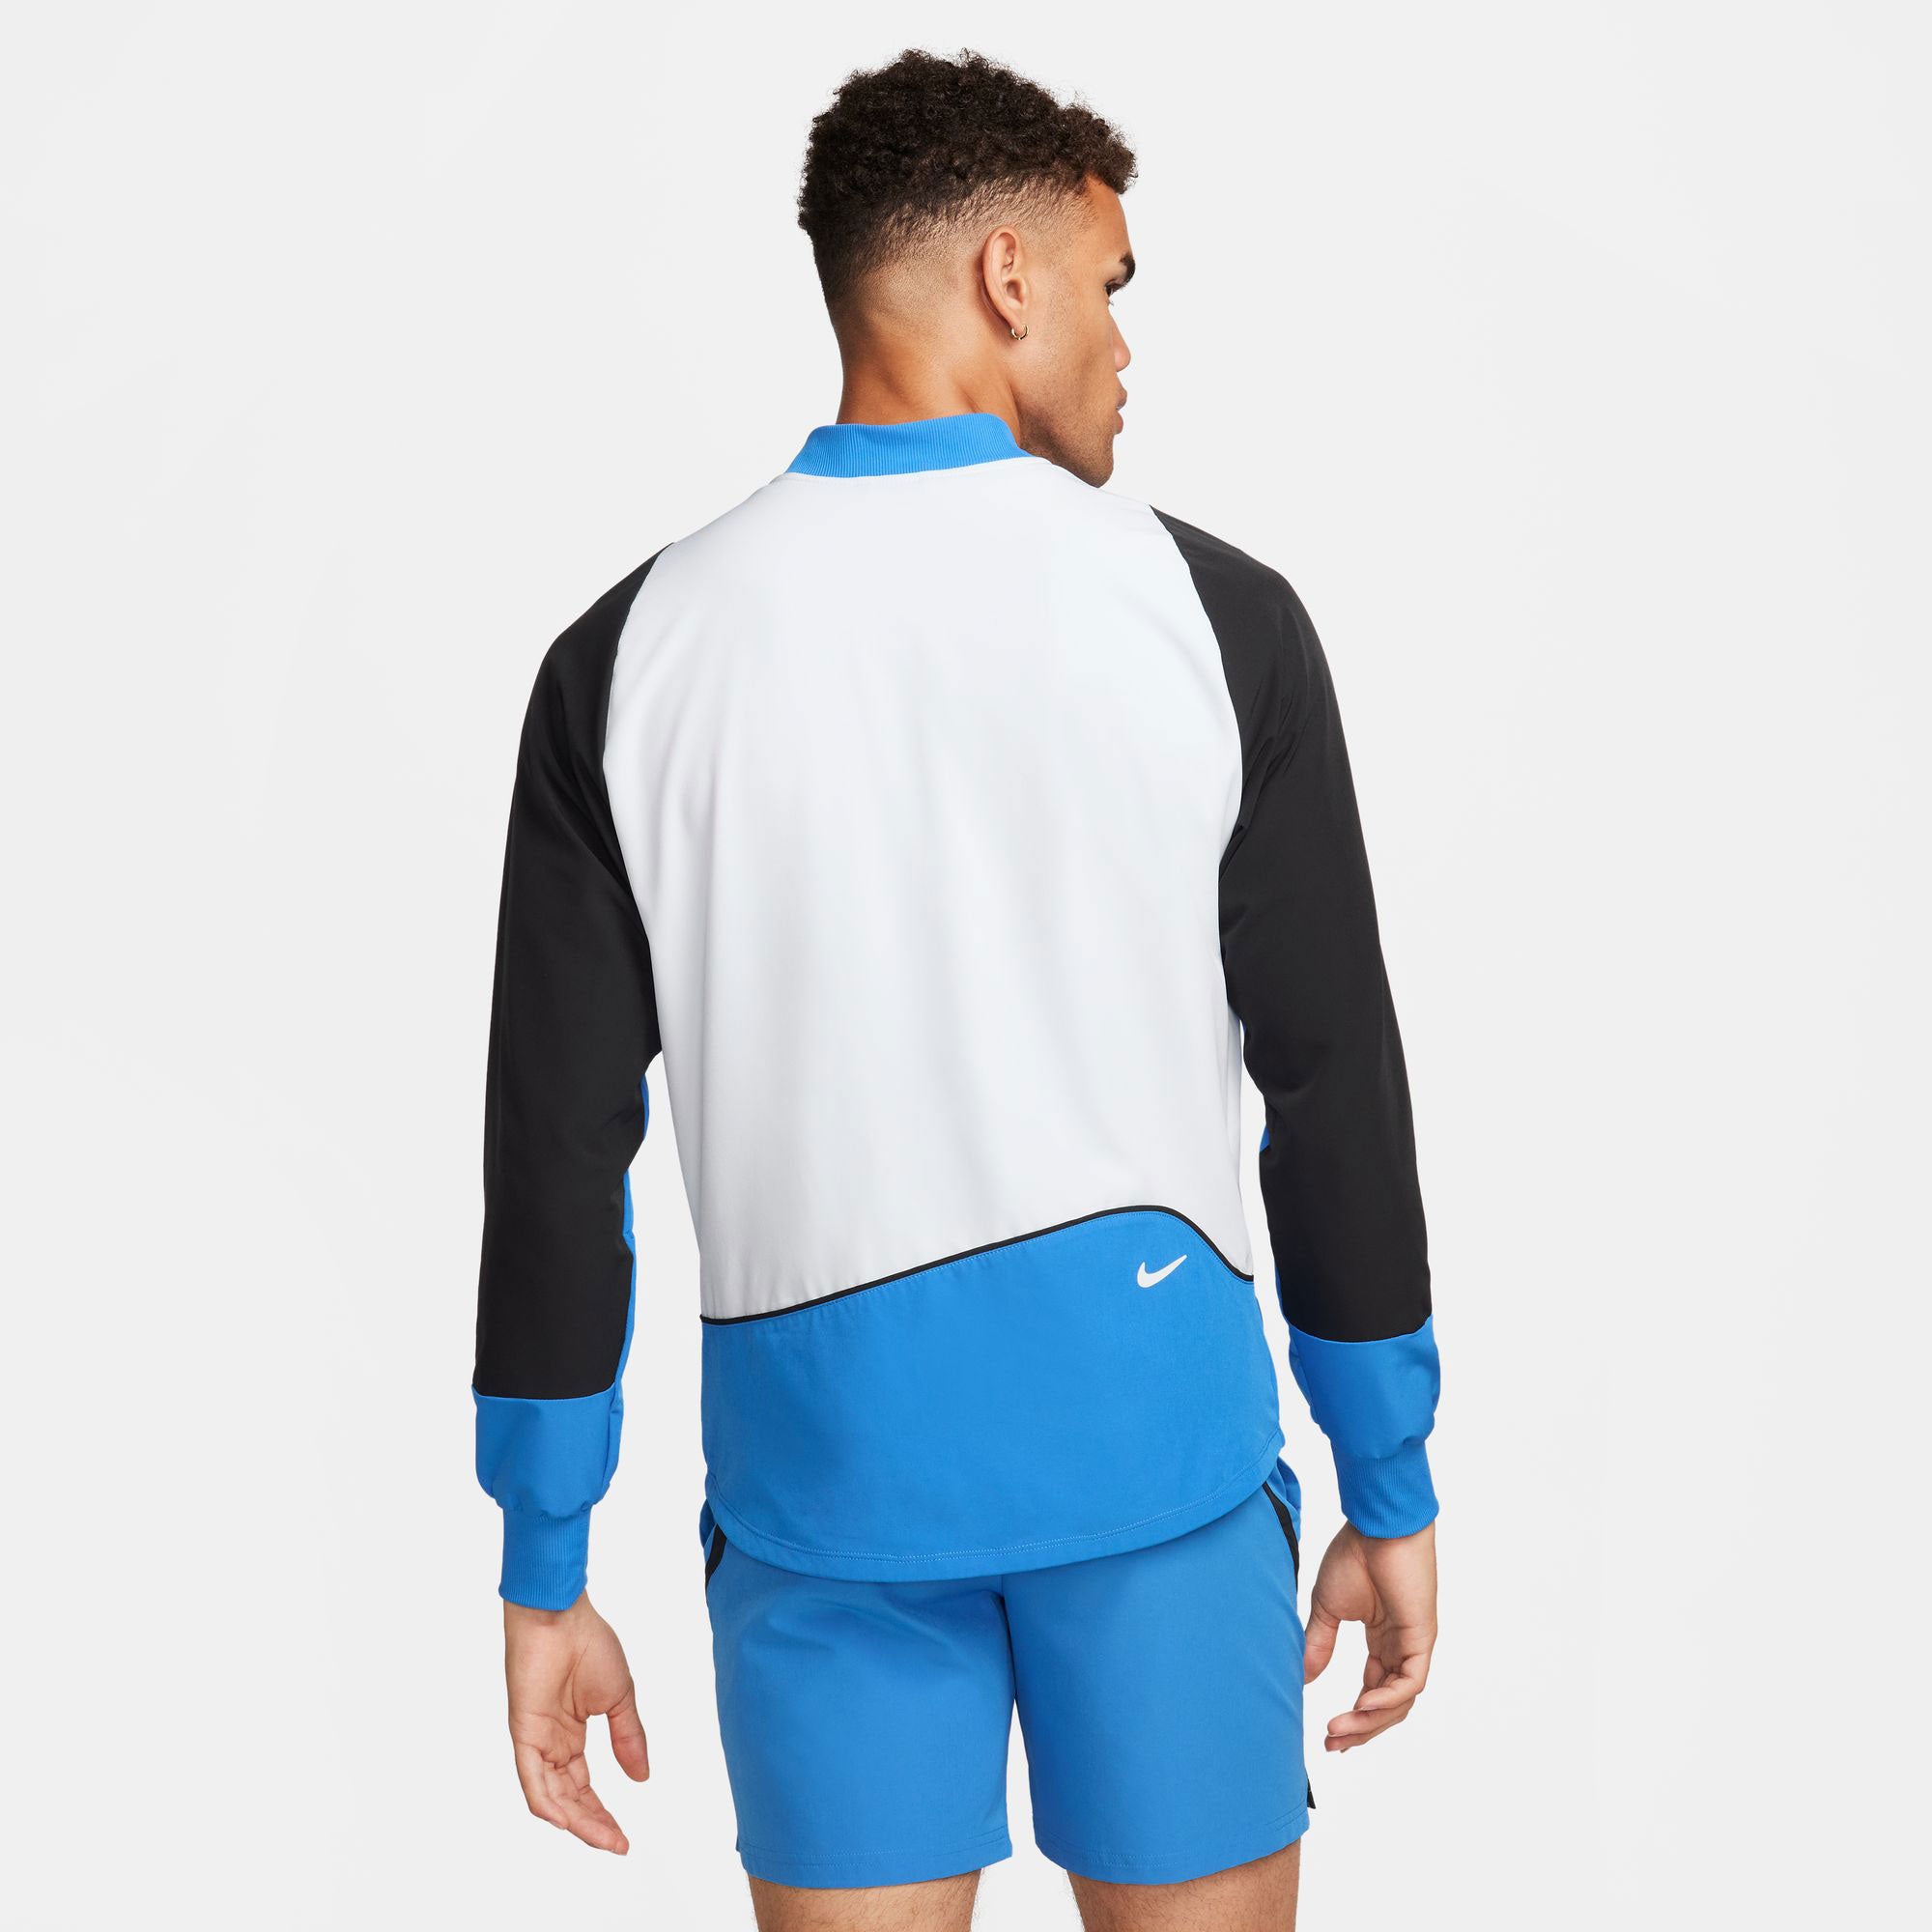 NikeCourt Advantage Men's Dri-FIT Tennis Jacket - Blue (2)